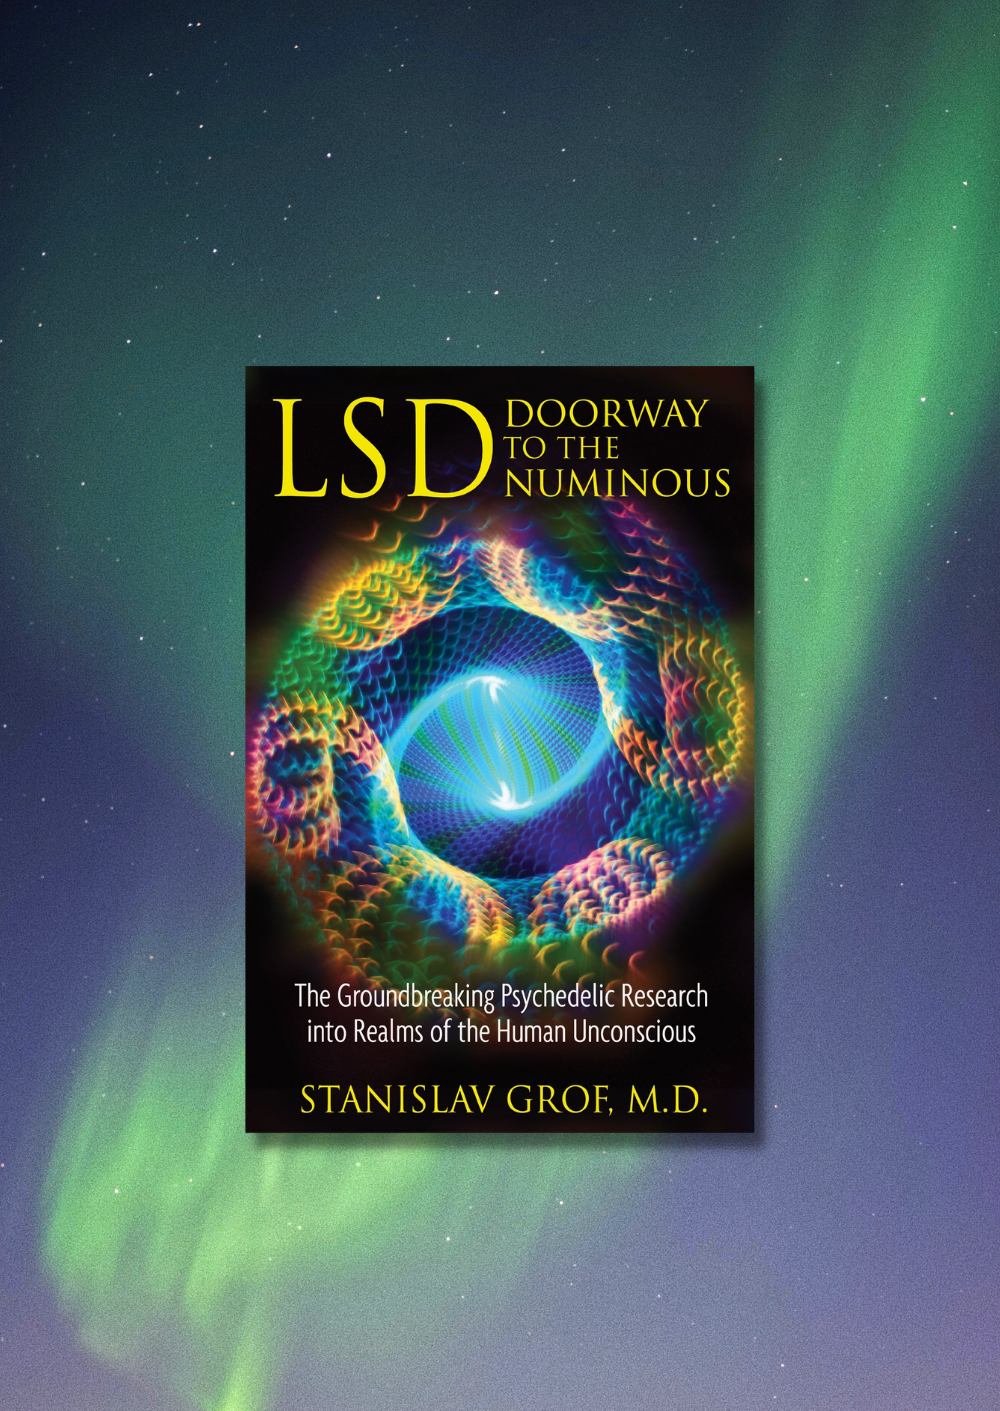 Stanislav Grof - LSD Doorway to the Numinous